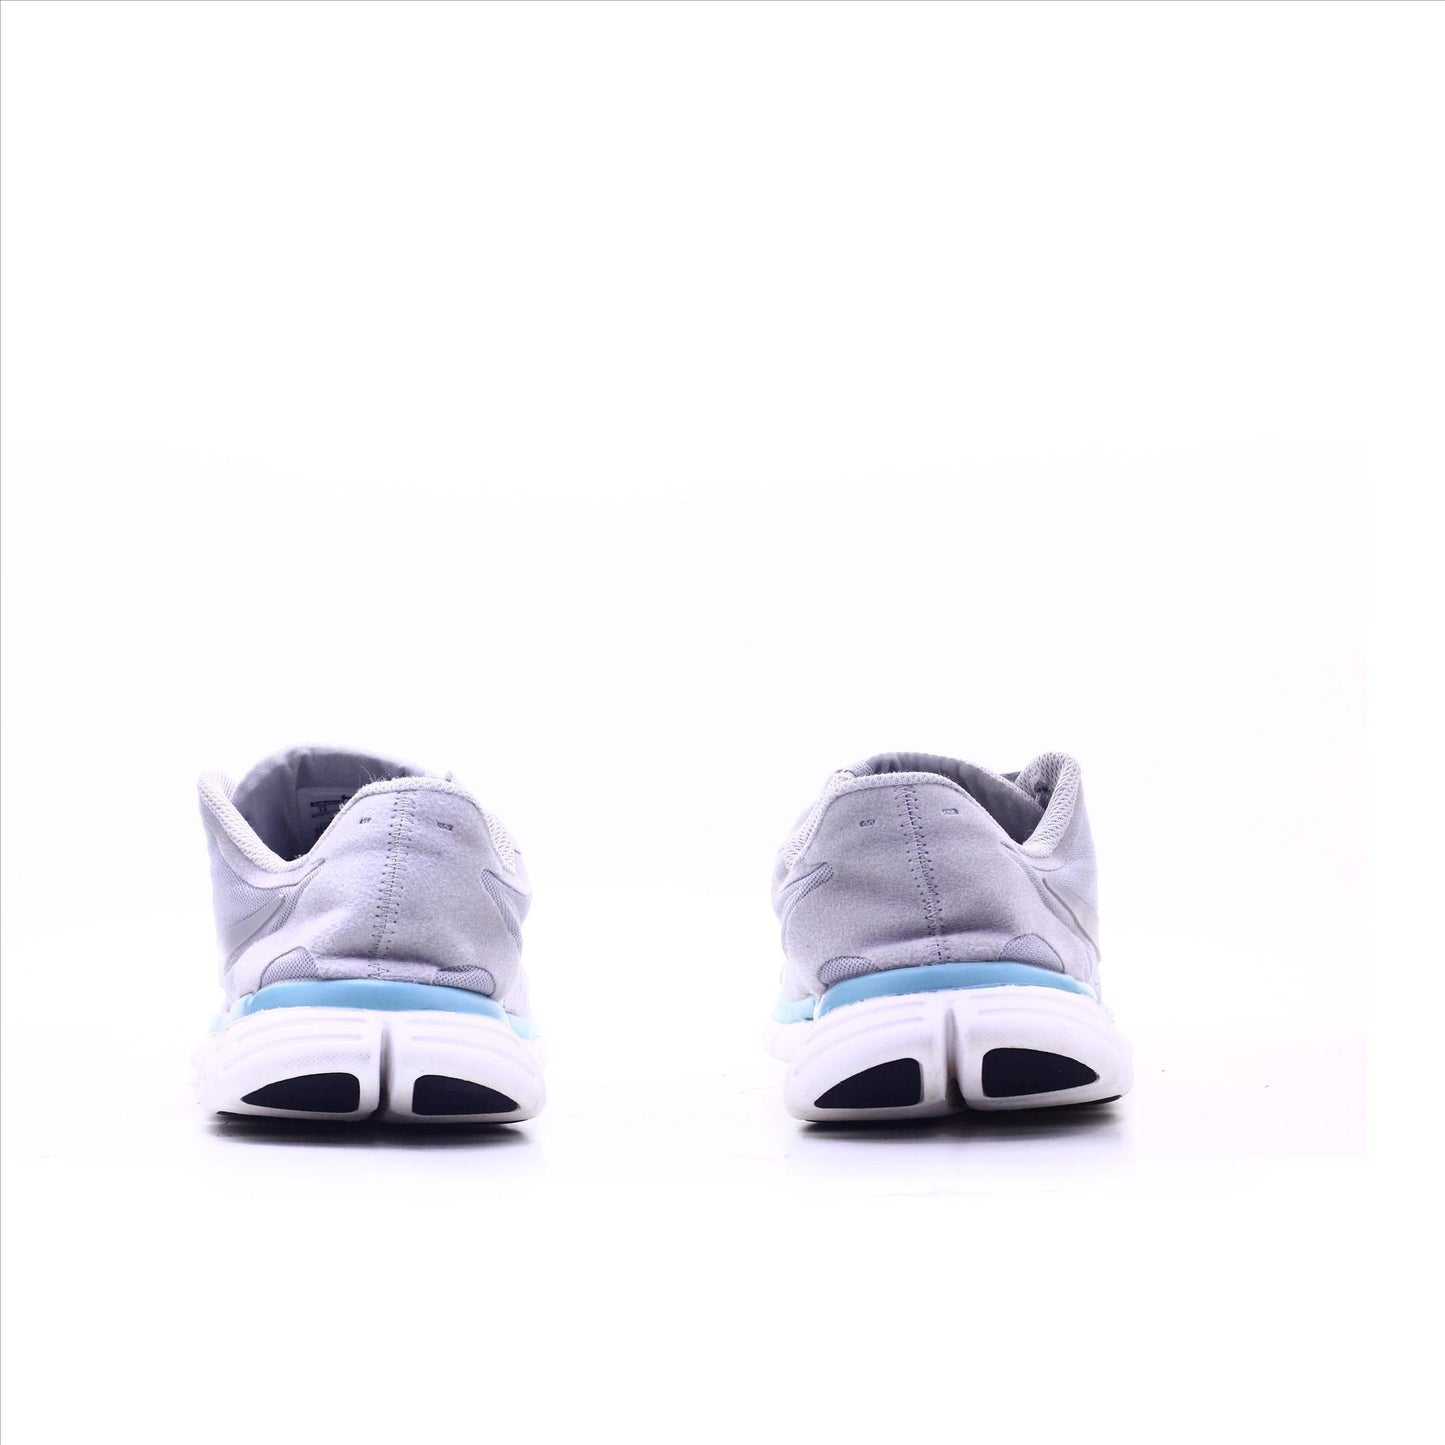 Nike Free 5.0